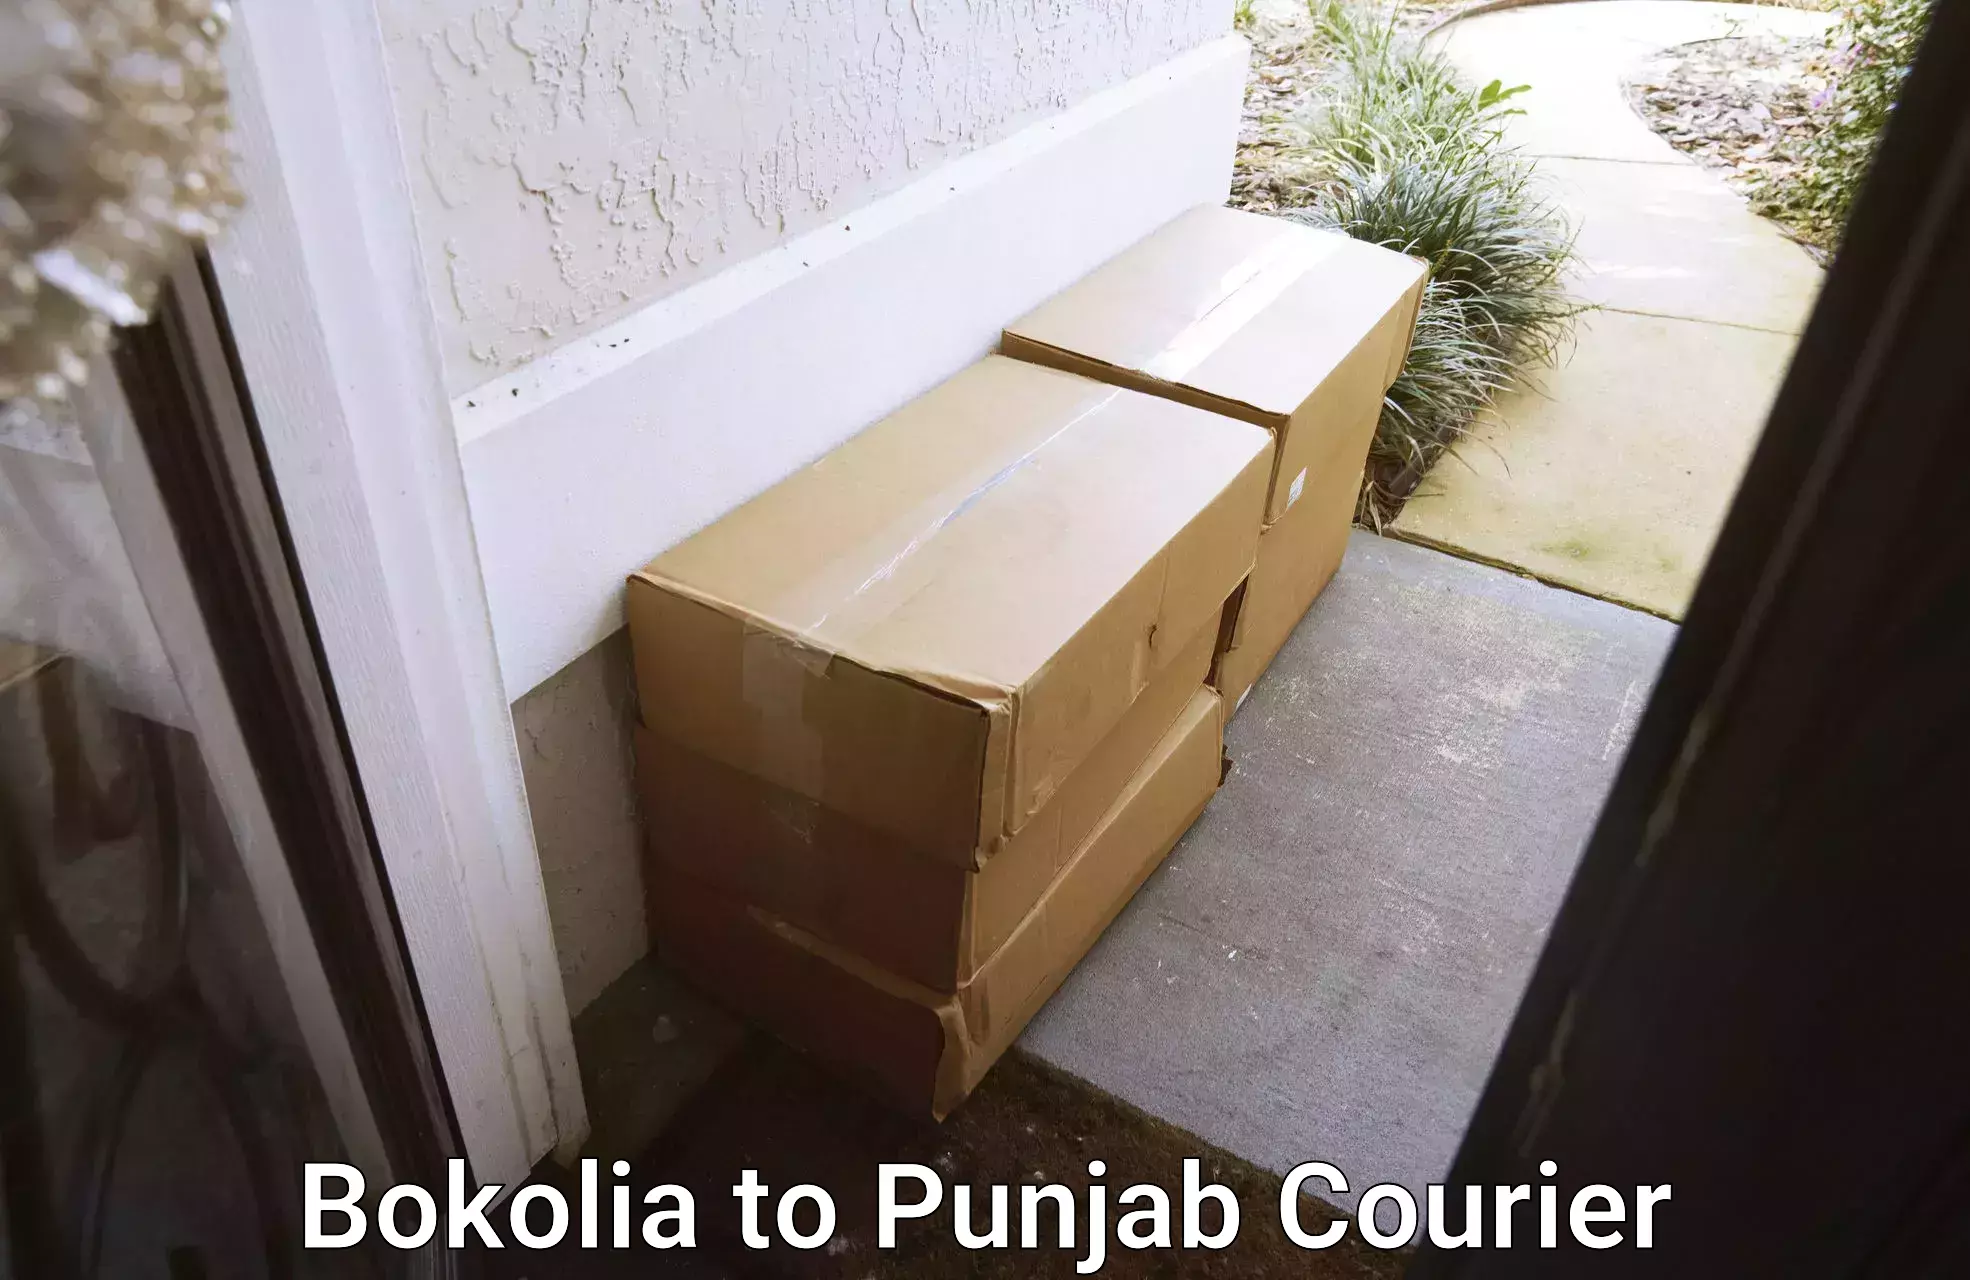 Bulk shipment in Bokolia to Punjab